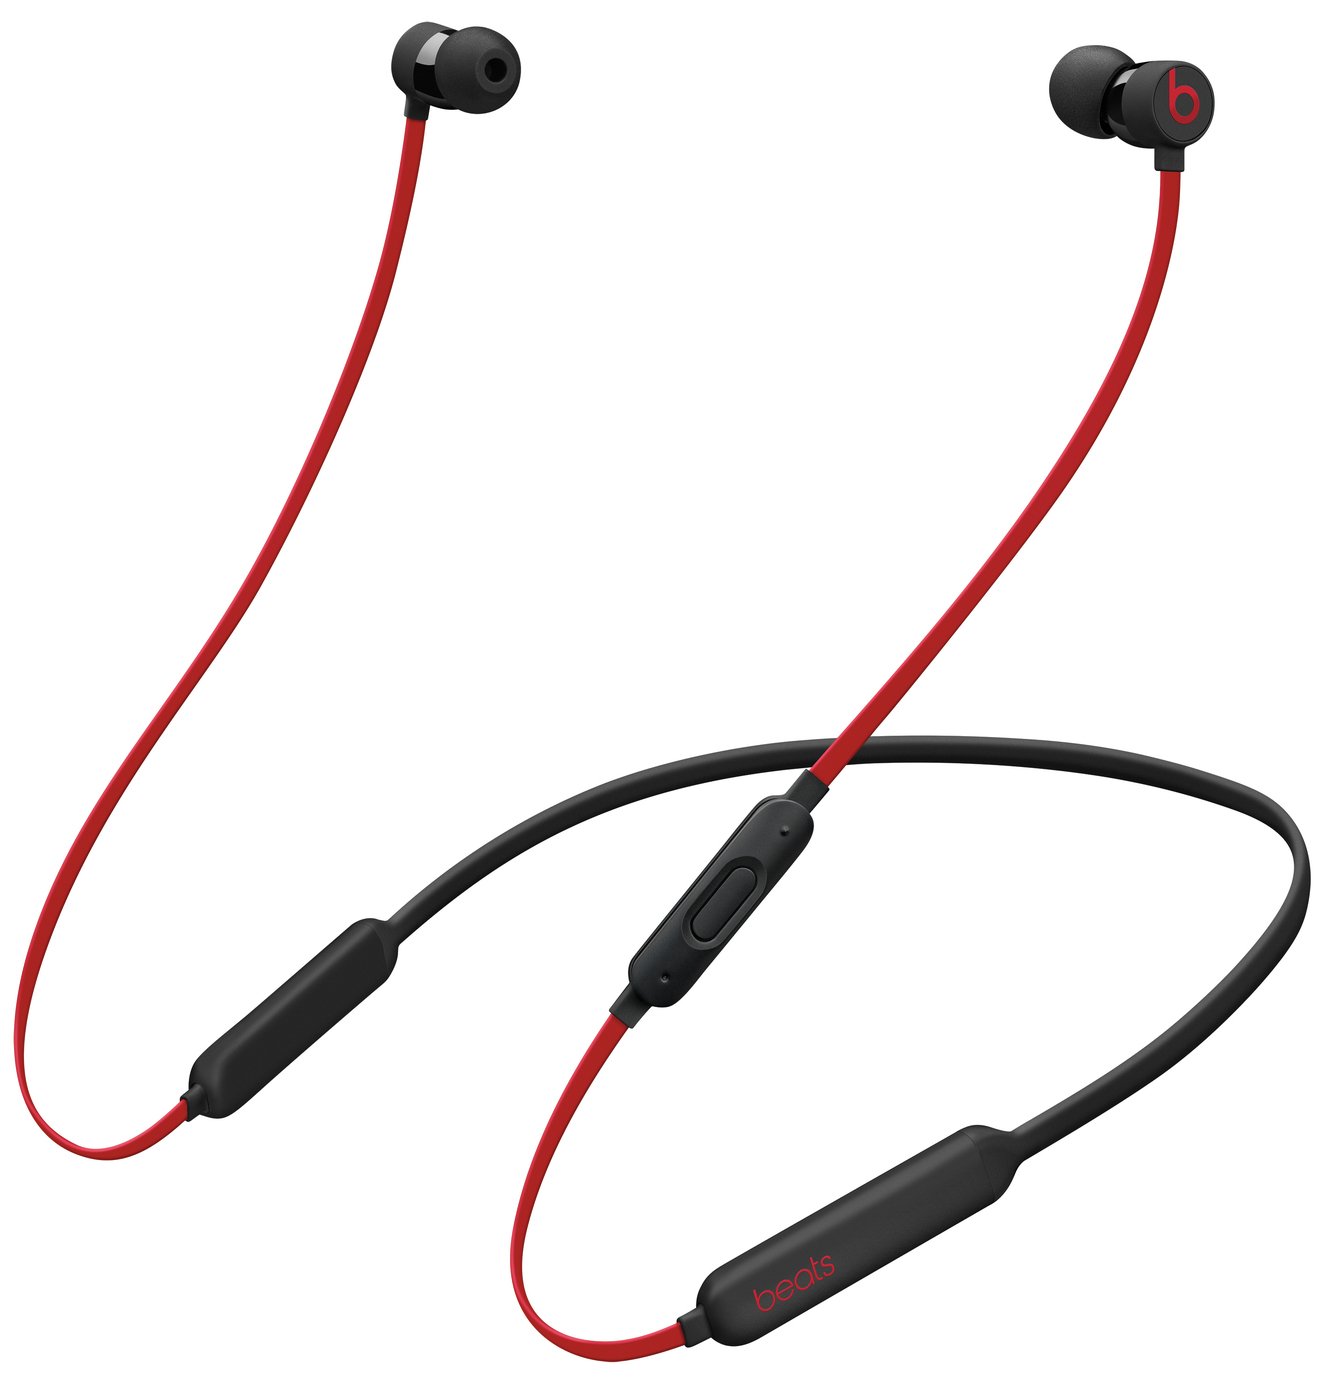 Beats X In-Ear Wireless Headphones Review